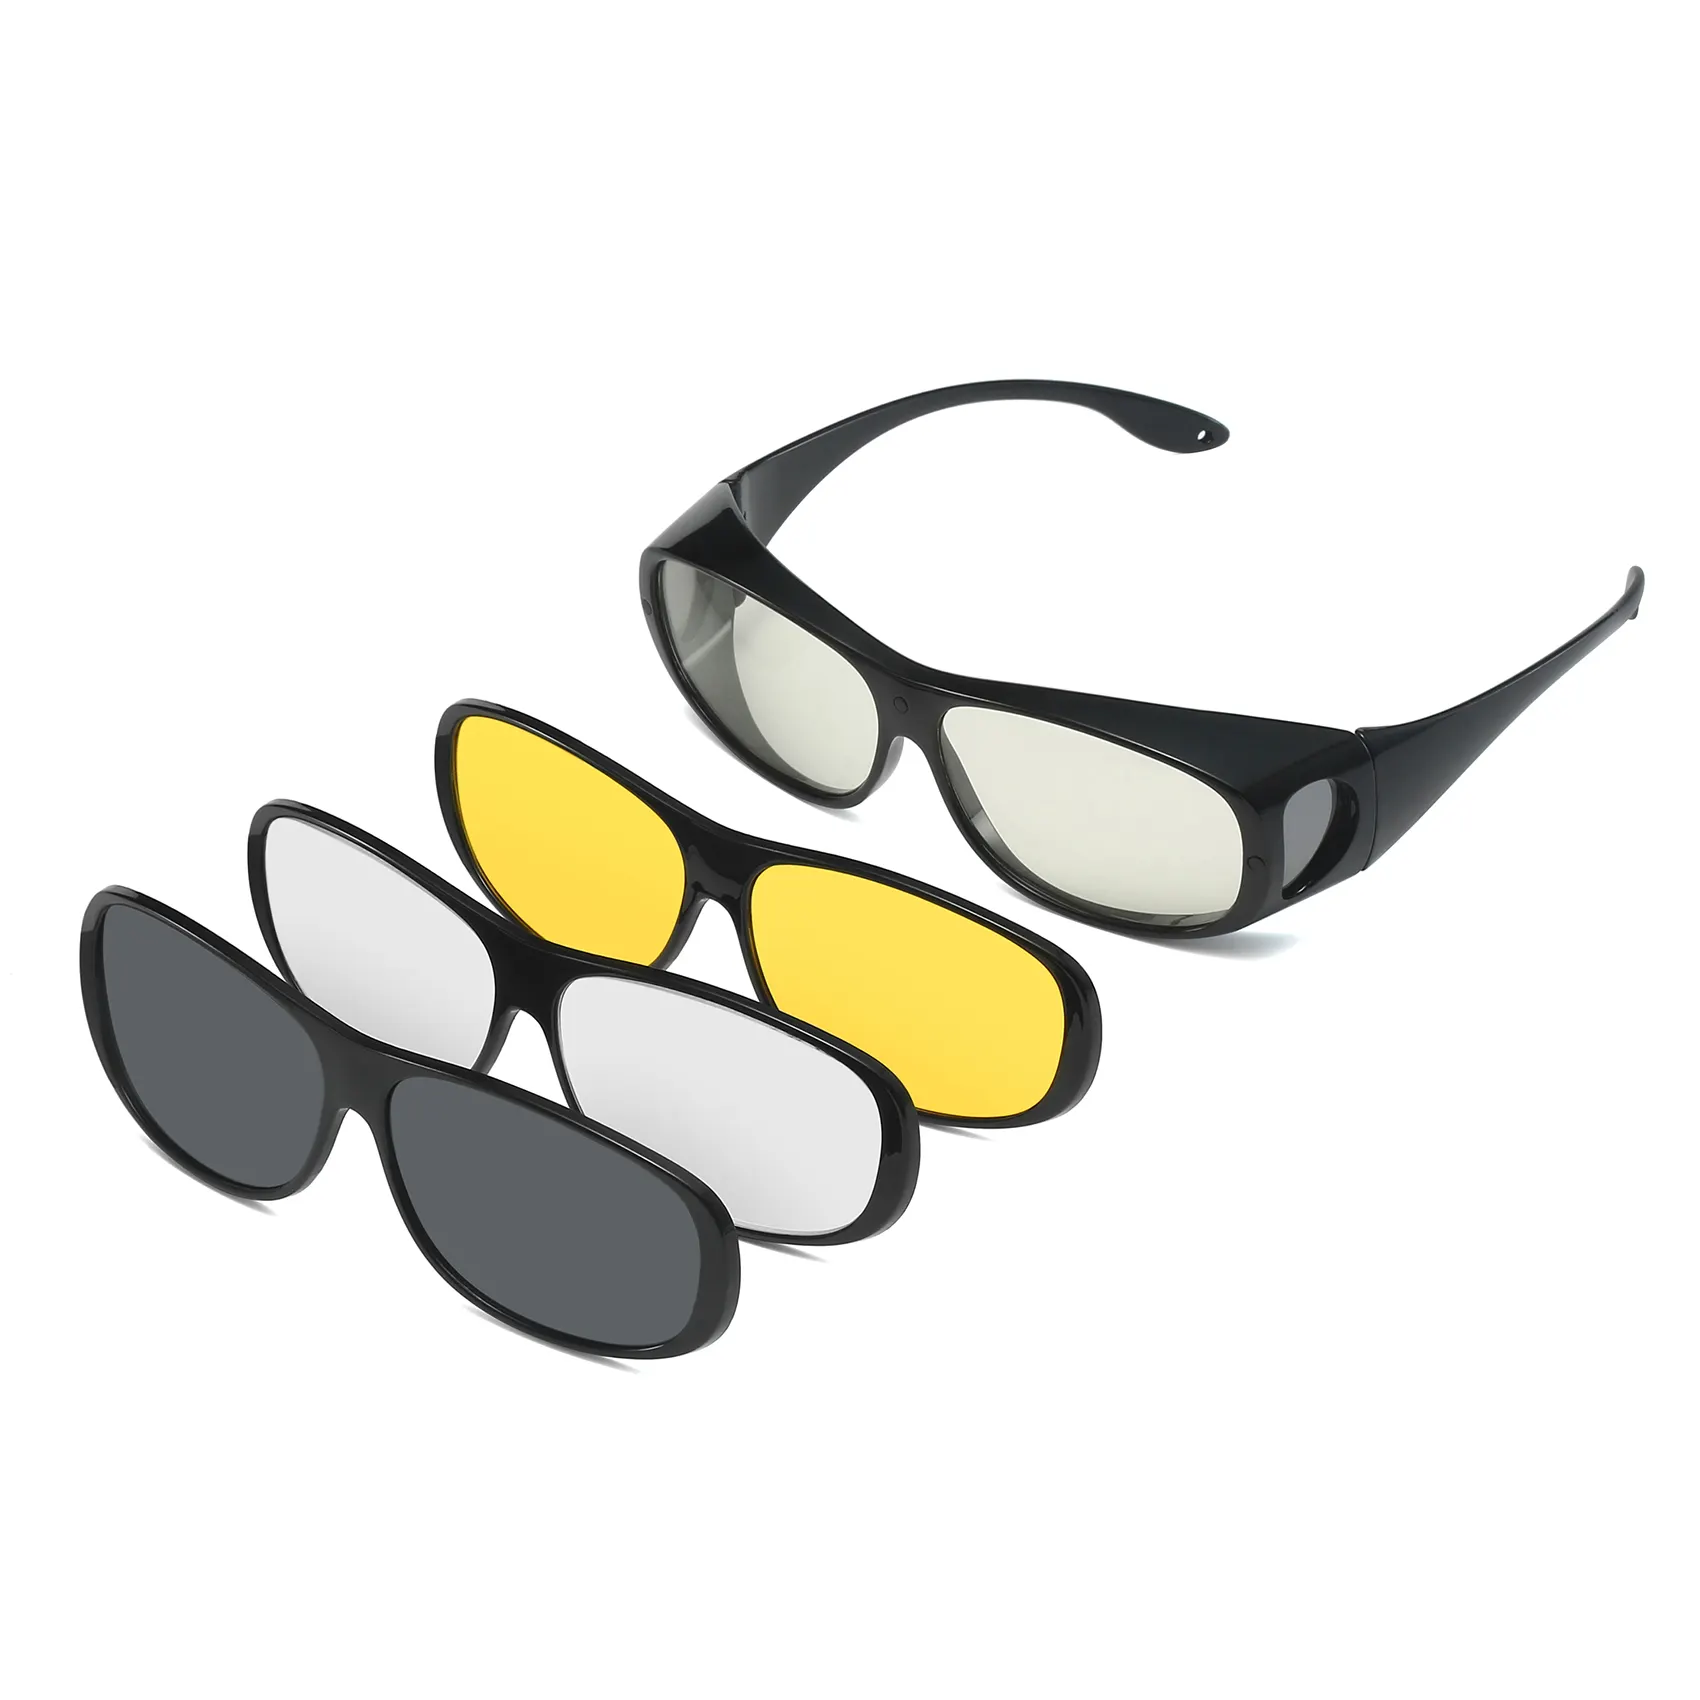 Gafas de sol polarizadas con Clip magnético para conducción nocturna, anteojos de sol 4 en 1 con ajuste envolvente y prescripción